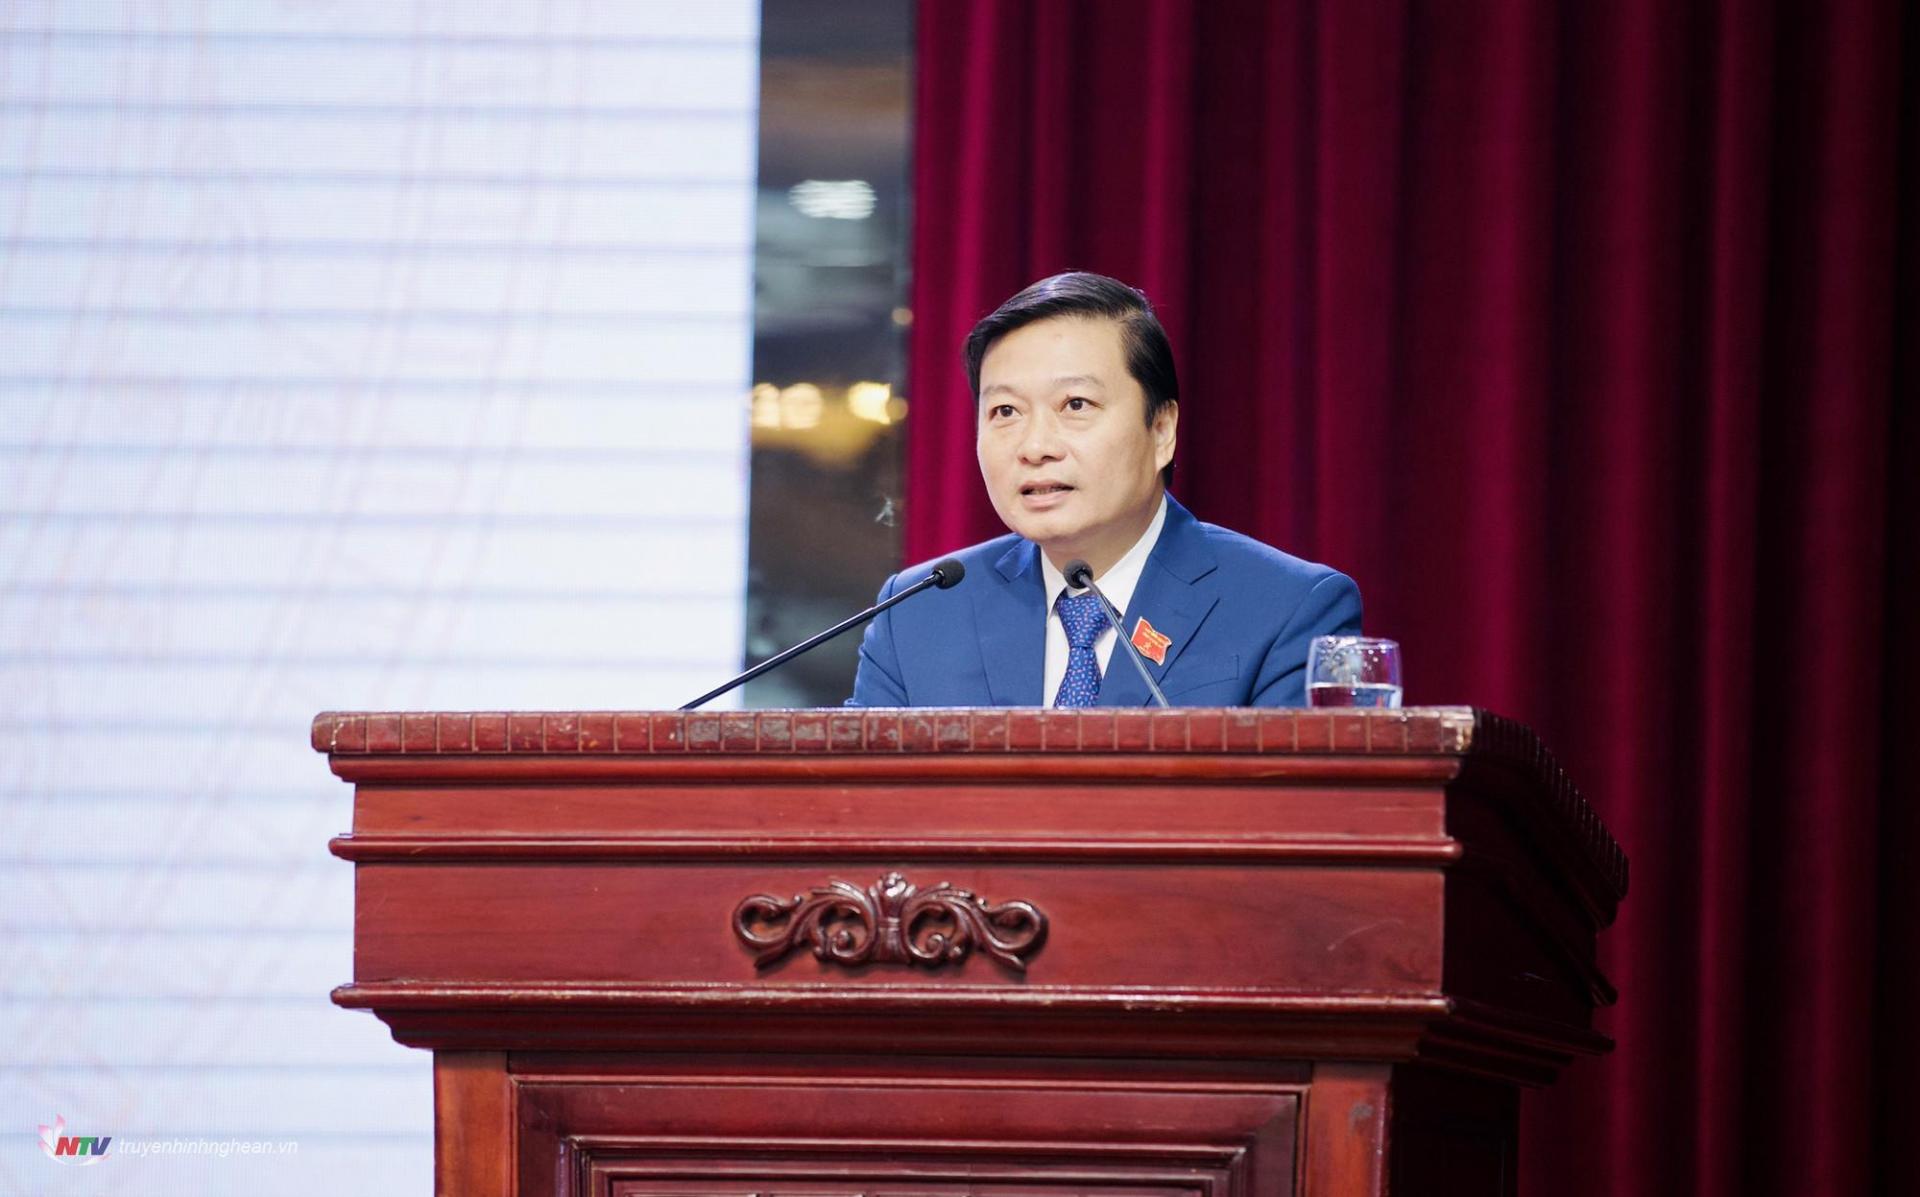 Đồng chí Lê Hồng Vinh, Ủy viên BTV Tỉnh ủy, Phó Chủ tịch thường trực UBND tỉnh báo cáo tóm tắt các tờ trình, dự thảo Nghị quyết do UBND tỉnh trình Kỳ họp.